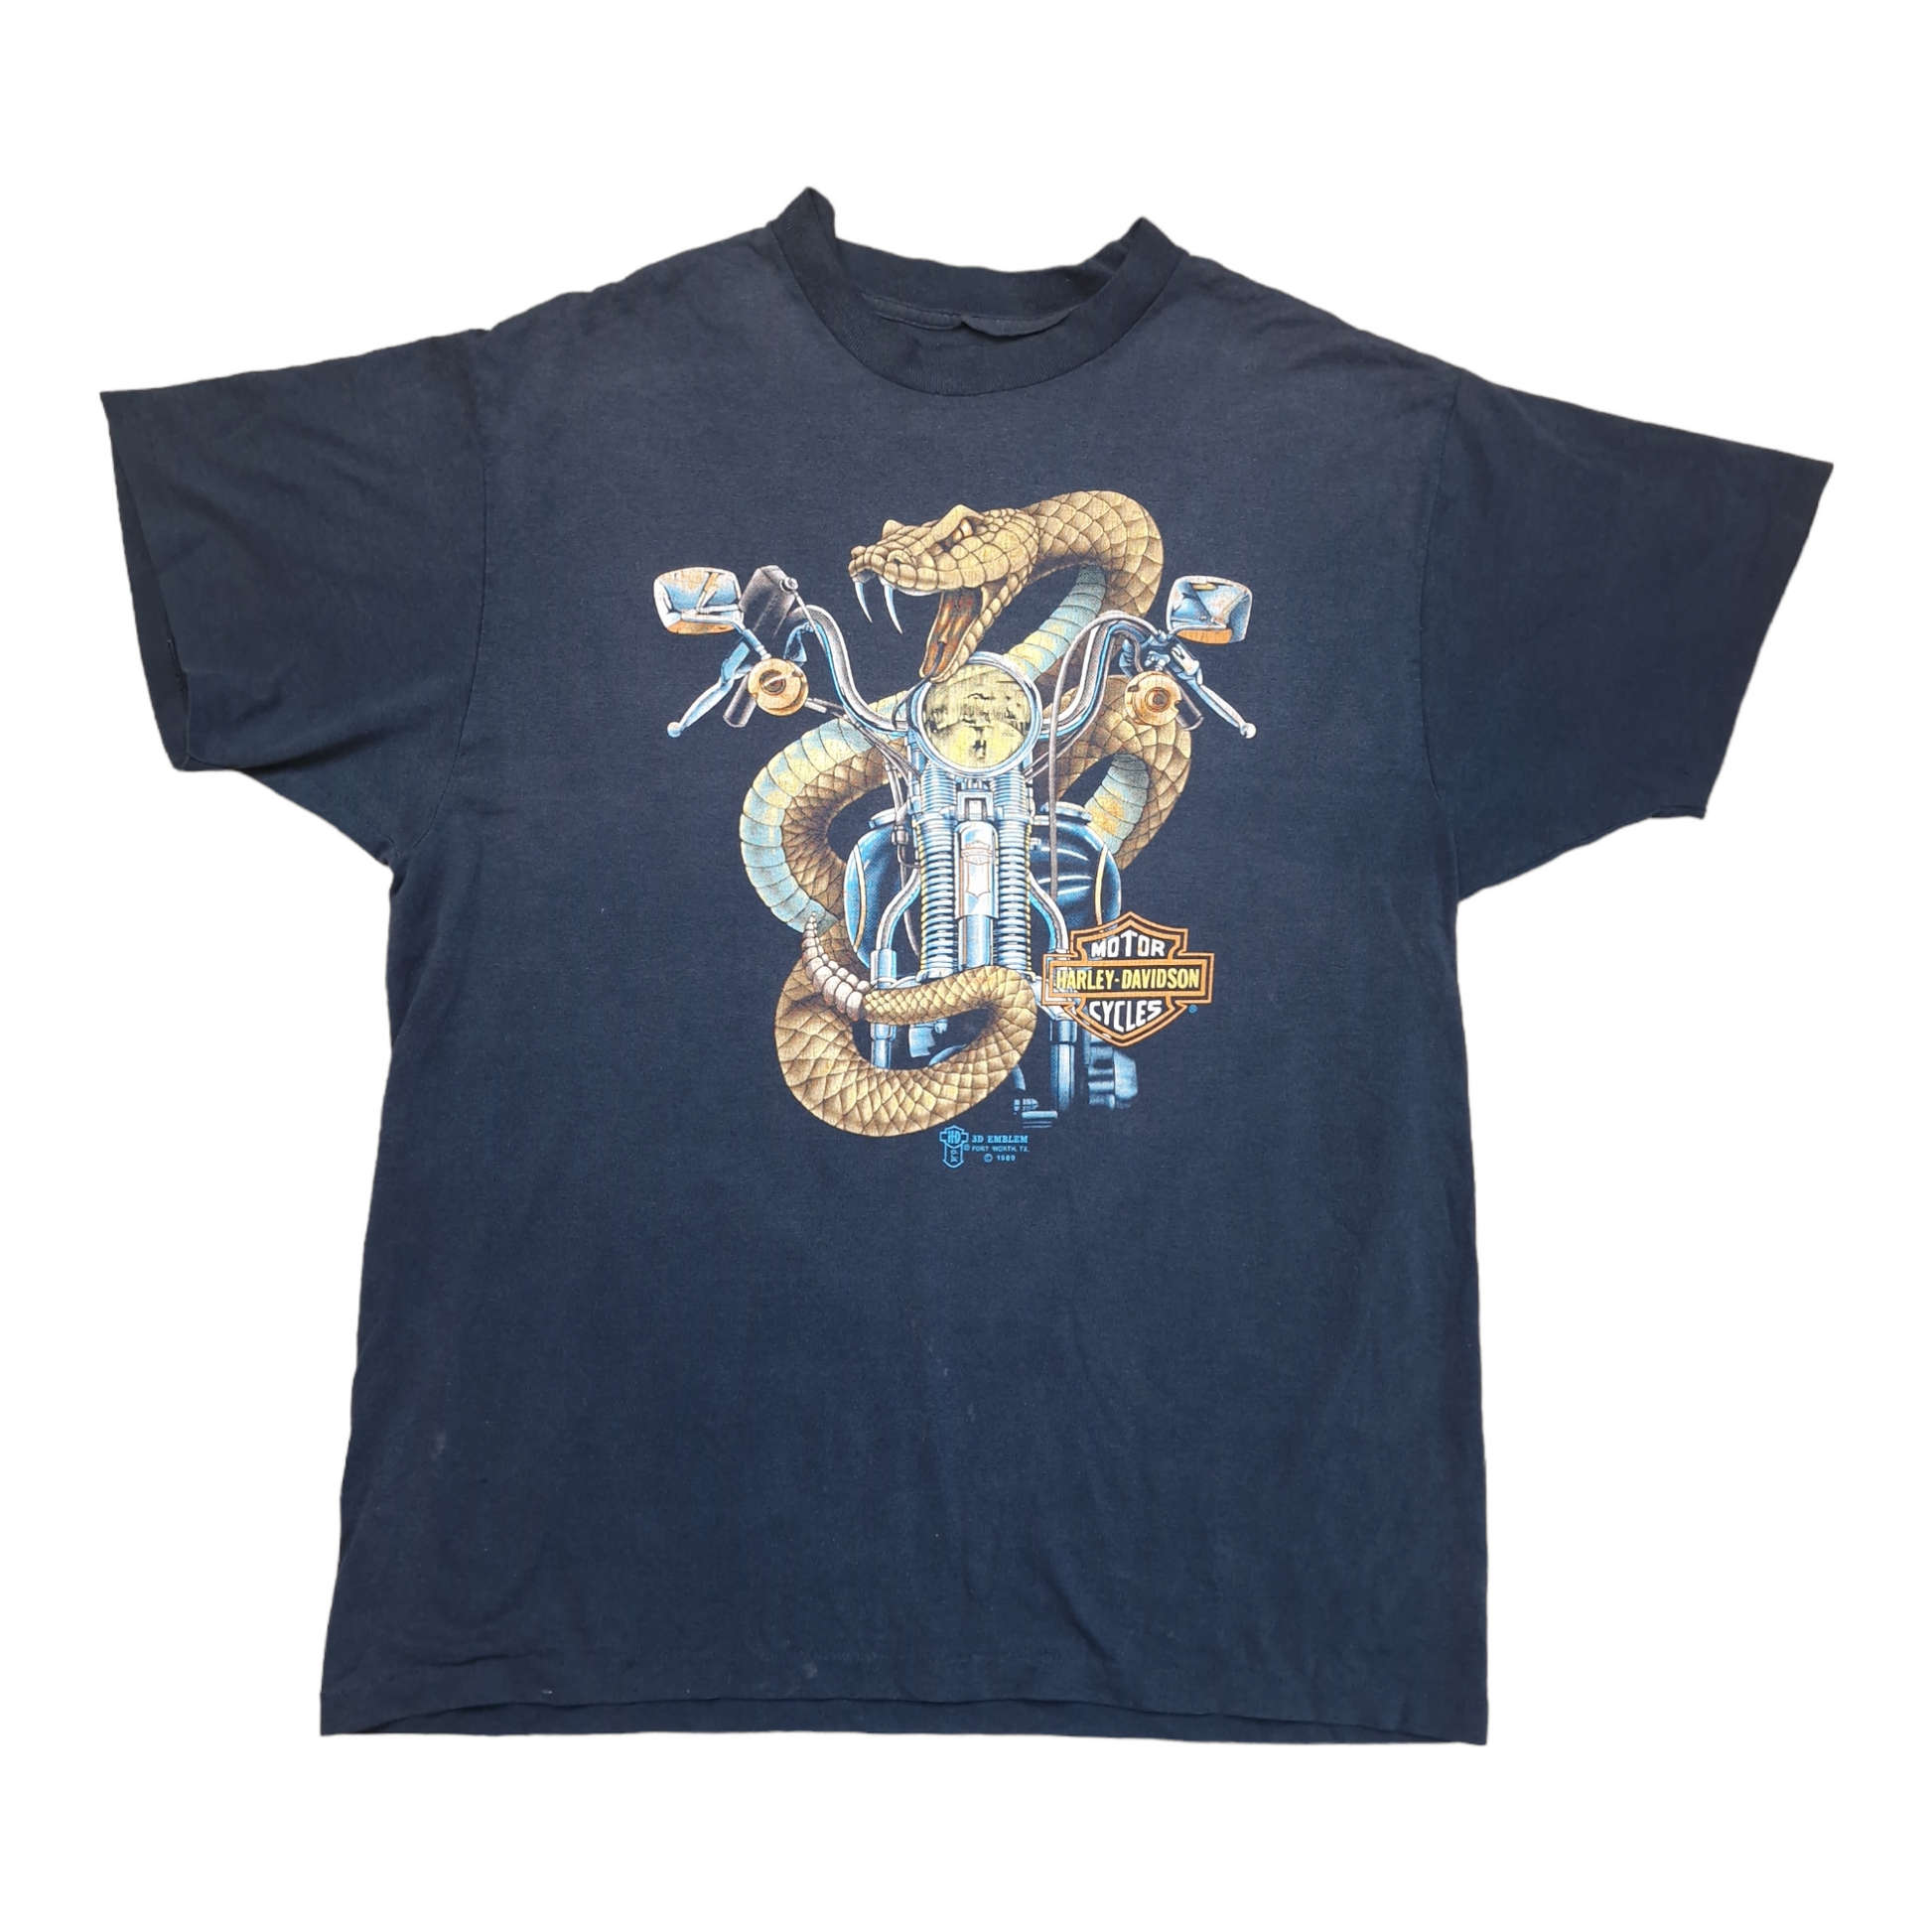 Vintage Harley Davidson 1989 3D emblem rattle snake t-shirt - large –  Vinsportage